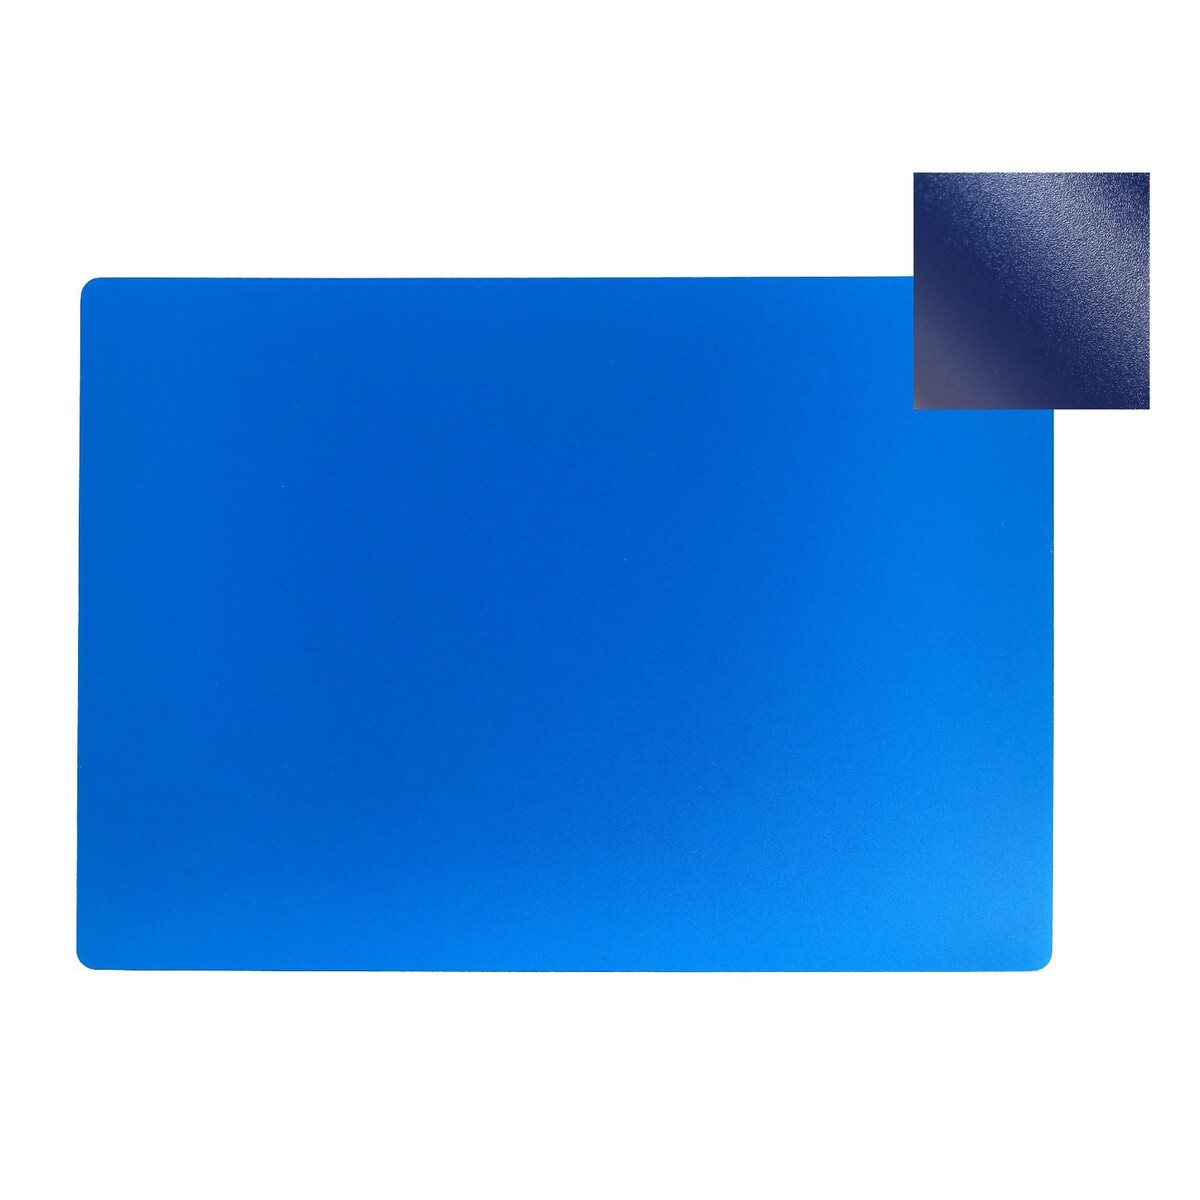 Накладка на стол пластиковая а4, 339 х 244 мм, 500 мкм, прозрачная, темно-синяя (подходит для офиса) интерактивная игрушка zuru roboalive robo fish плавающая рыбка темно синяя